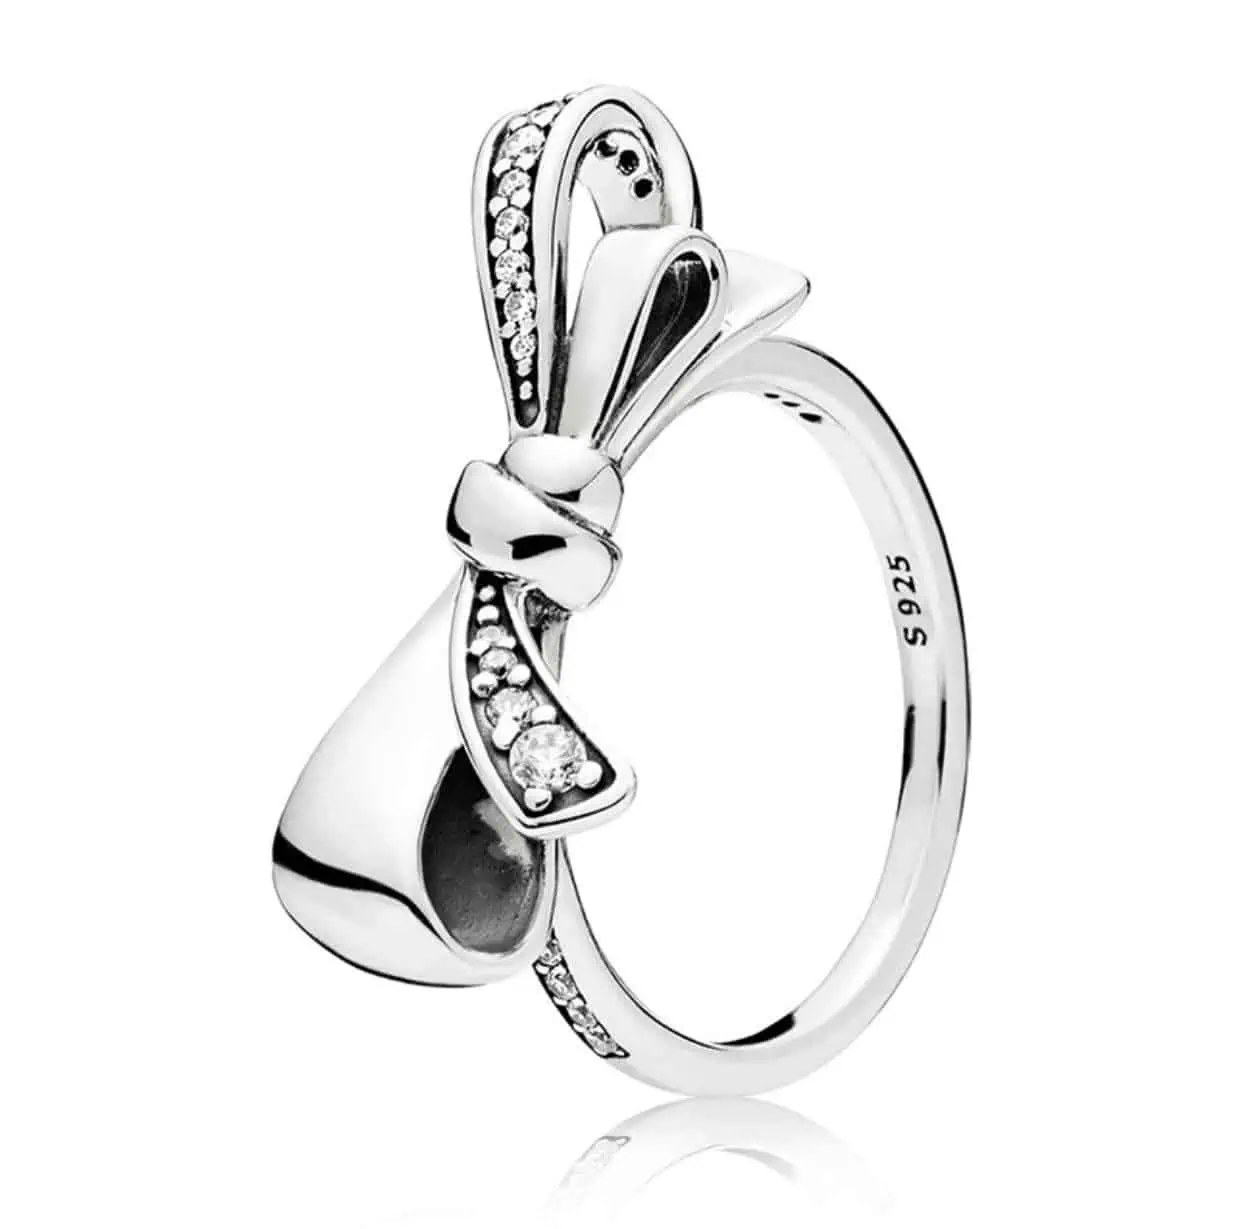 Product Afbeelding Vooraanzicht van deze geweldige statement ring uit de ringen collectie. Deze ring heeft een grote strik waarvan een lus is ingelegd met zirkonia. De ring is gemaakt van 925 sterling zilver en verkrijgbaar in verschillende maten.